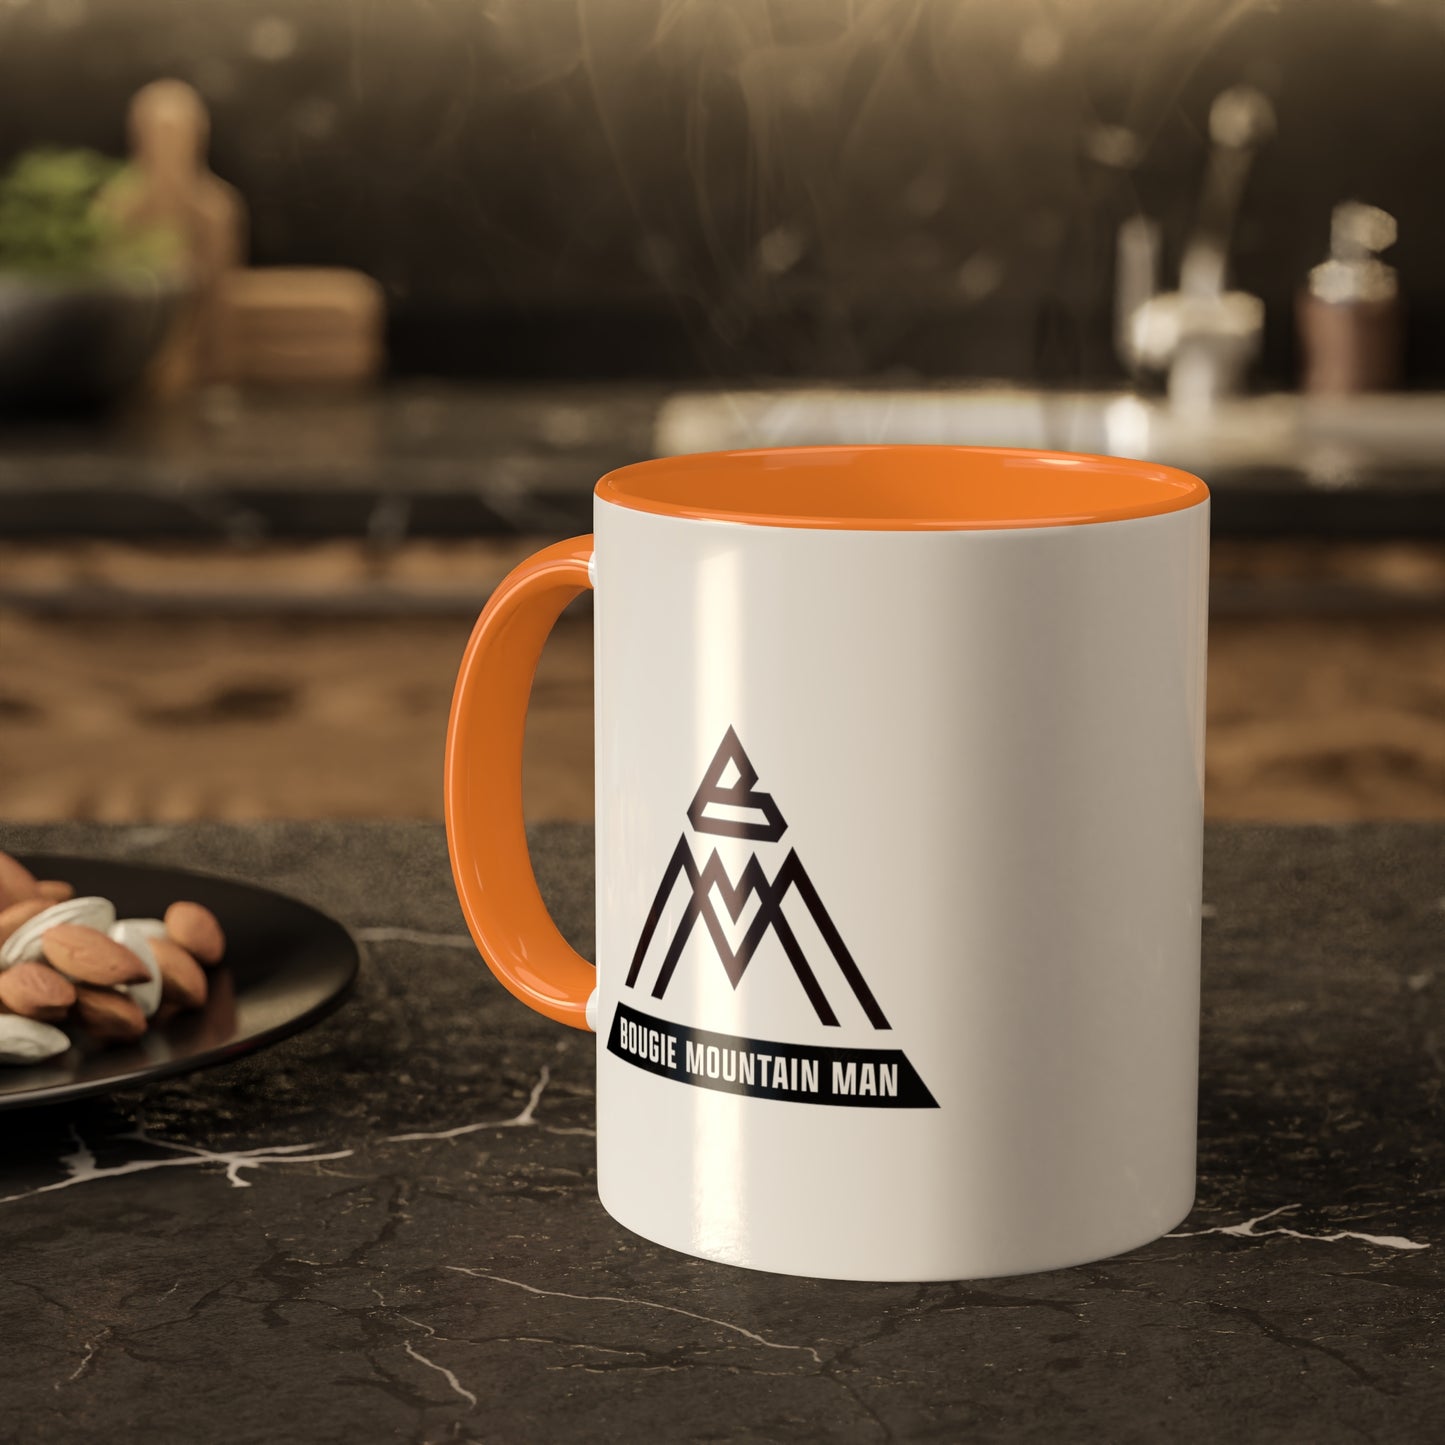 Bougie Mountain Man Mug (logo - no wood)